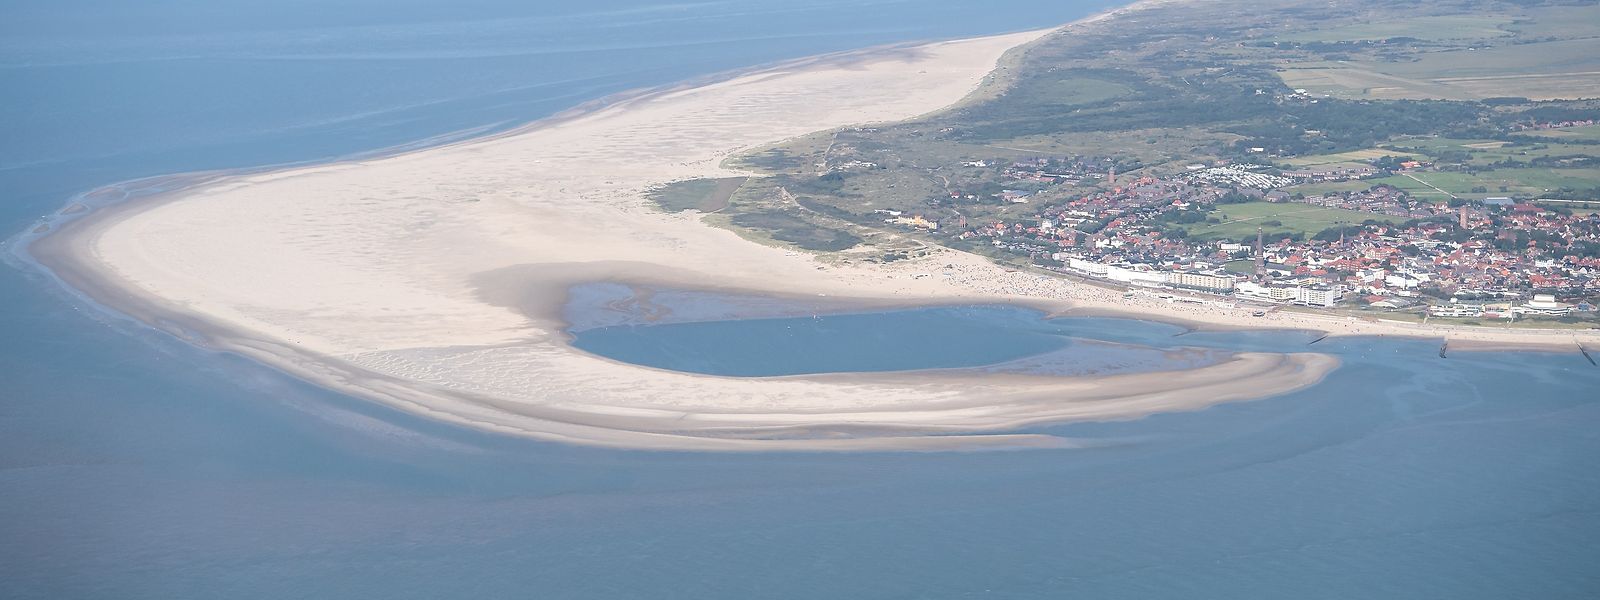 Die ostfriesische Insel Borkum. Für die geplante Erdgasförderung in der Nordsee vor Borkum hat die zuständige Behörde dem niederländischen Unternehmen One-Dyas nun die bergbaurechtliche Bewilligung erteilt. 